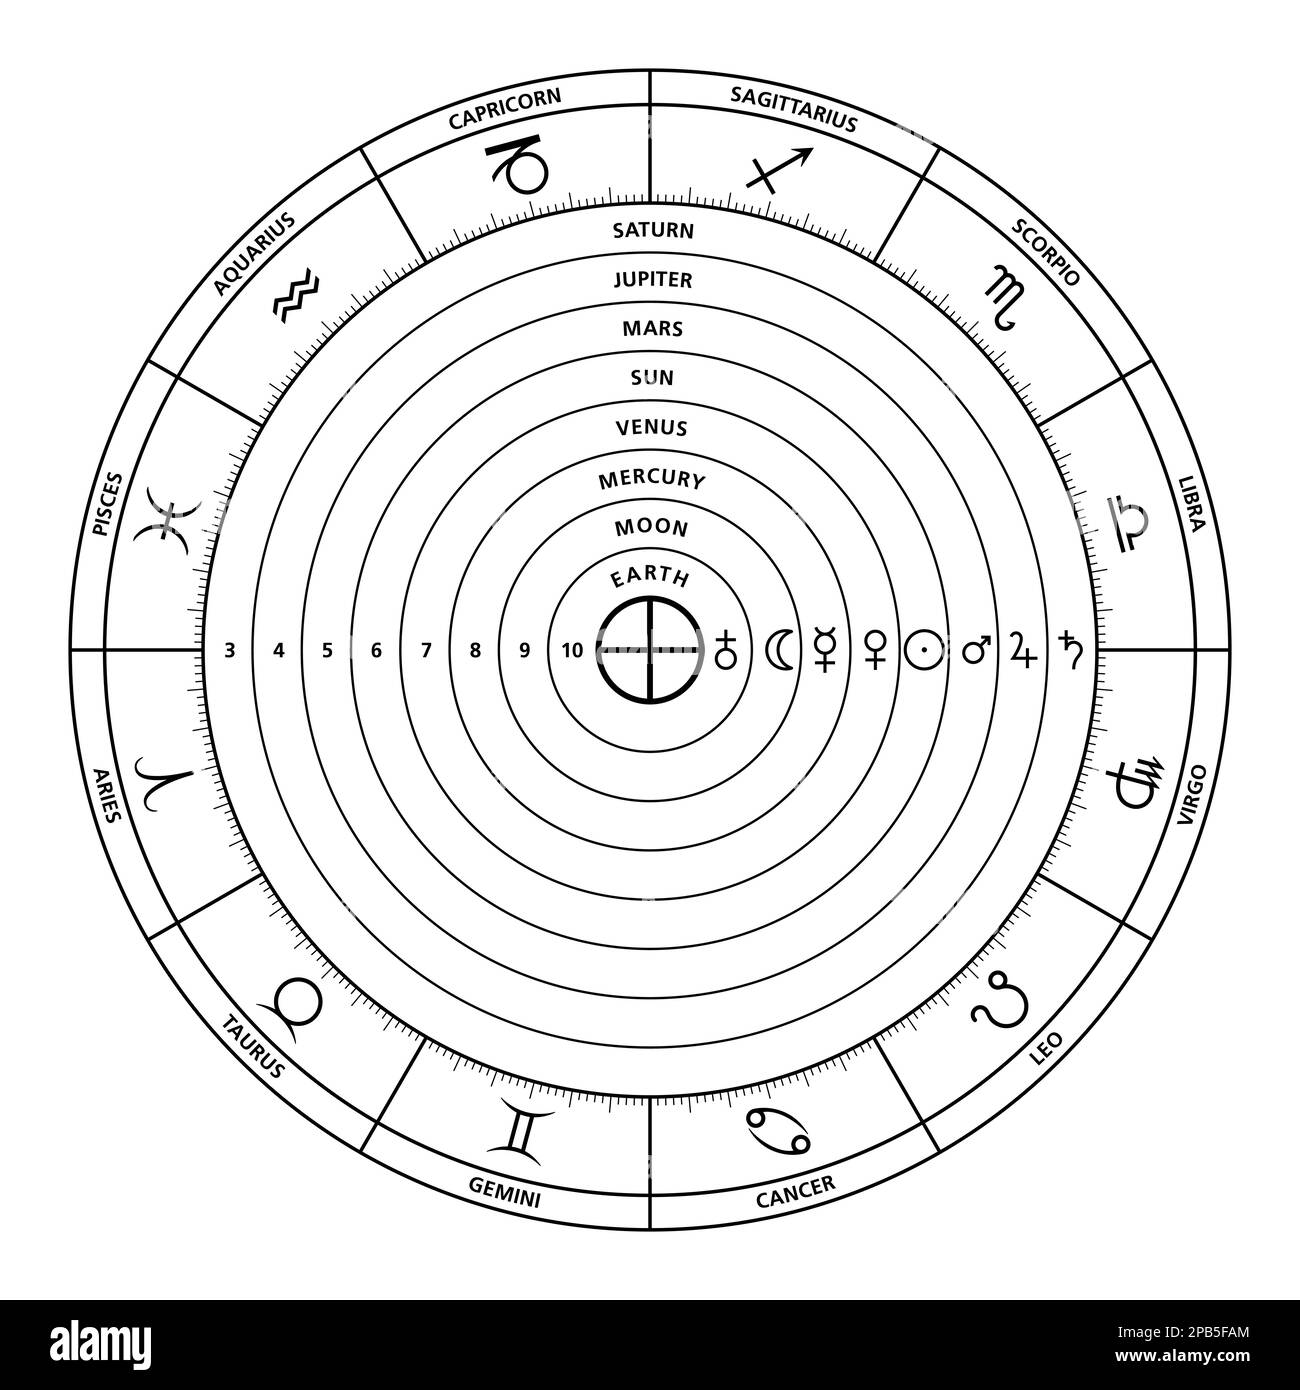 Sphères célestes du système Ptolemaic. Orbes célestes de modèles cosmologiques anciens. Cercle du zodiaque, planètes et métaux. Banque D'Images